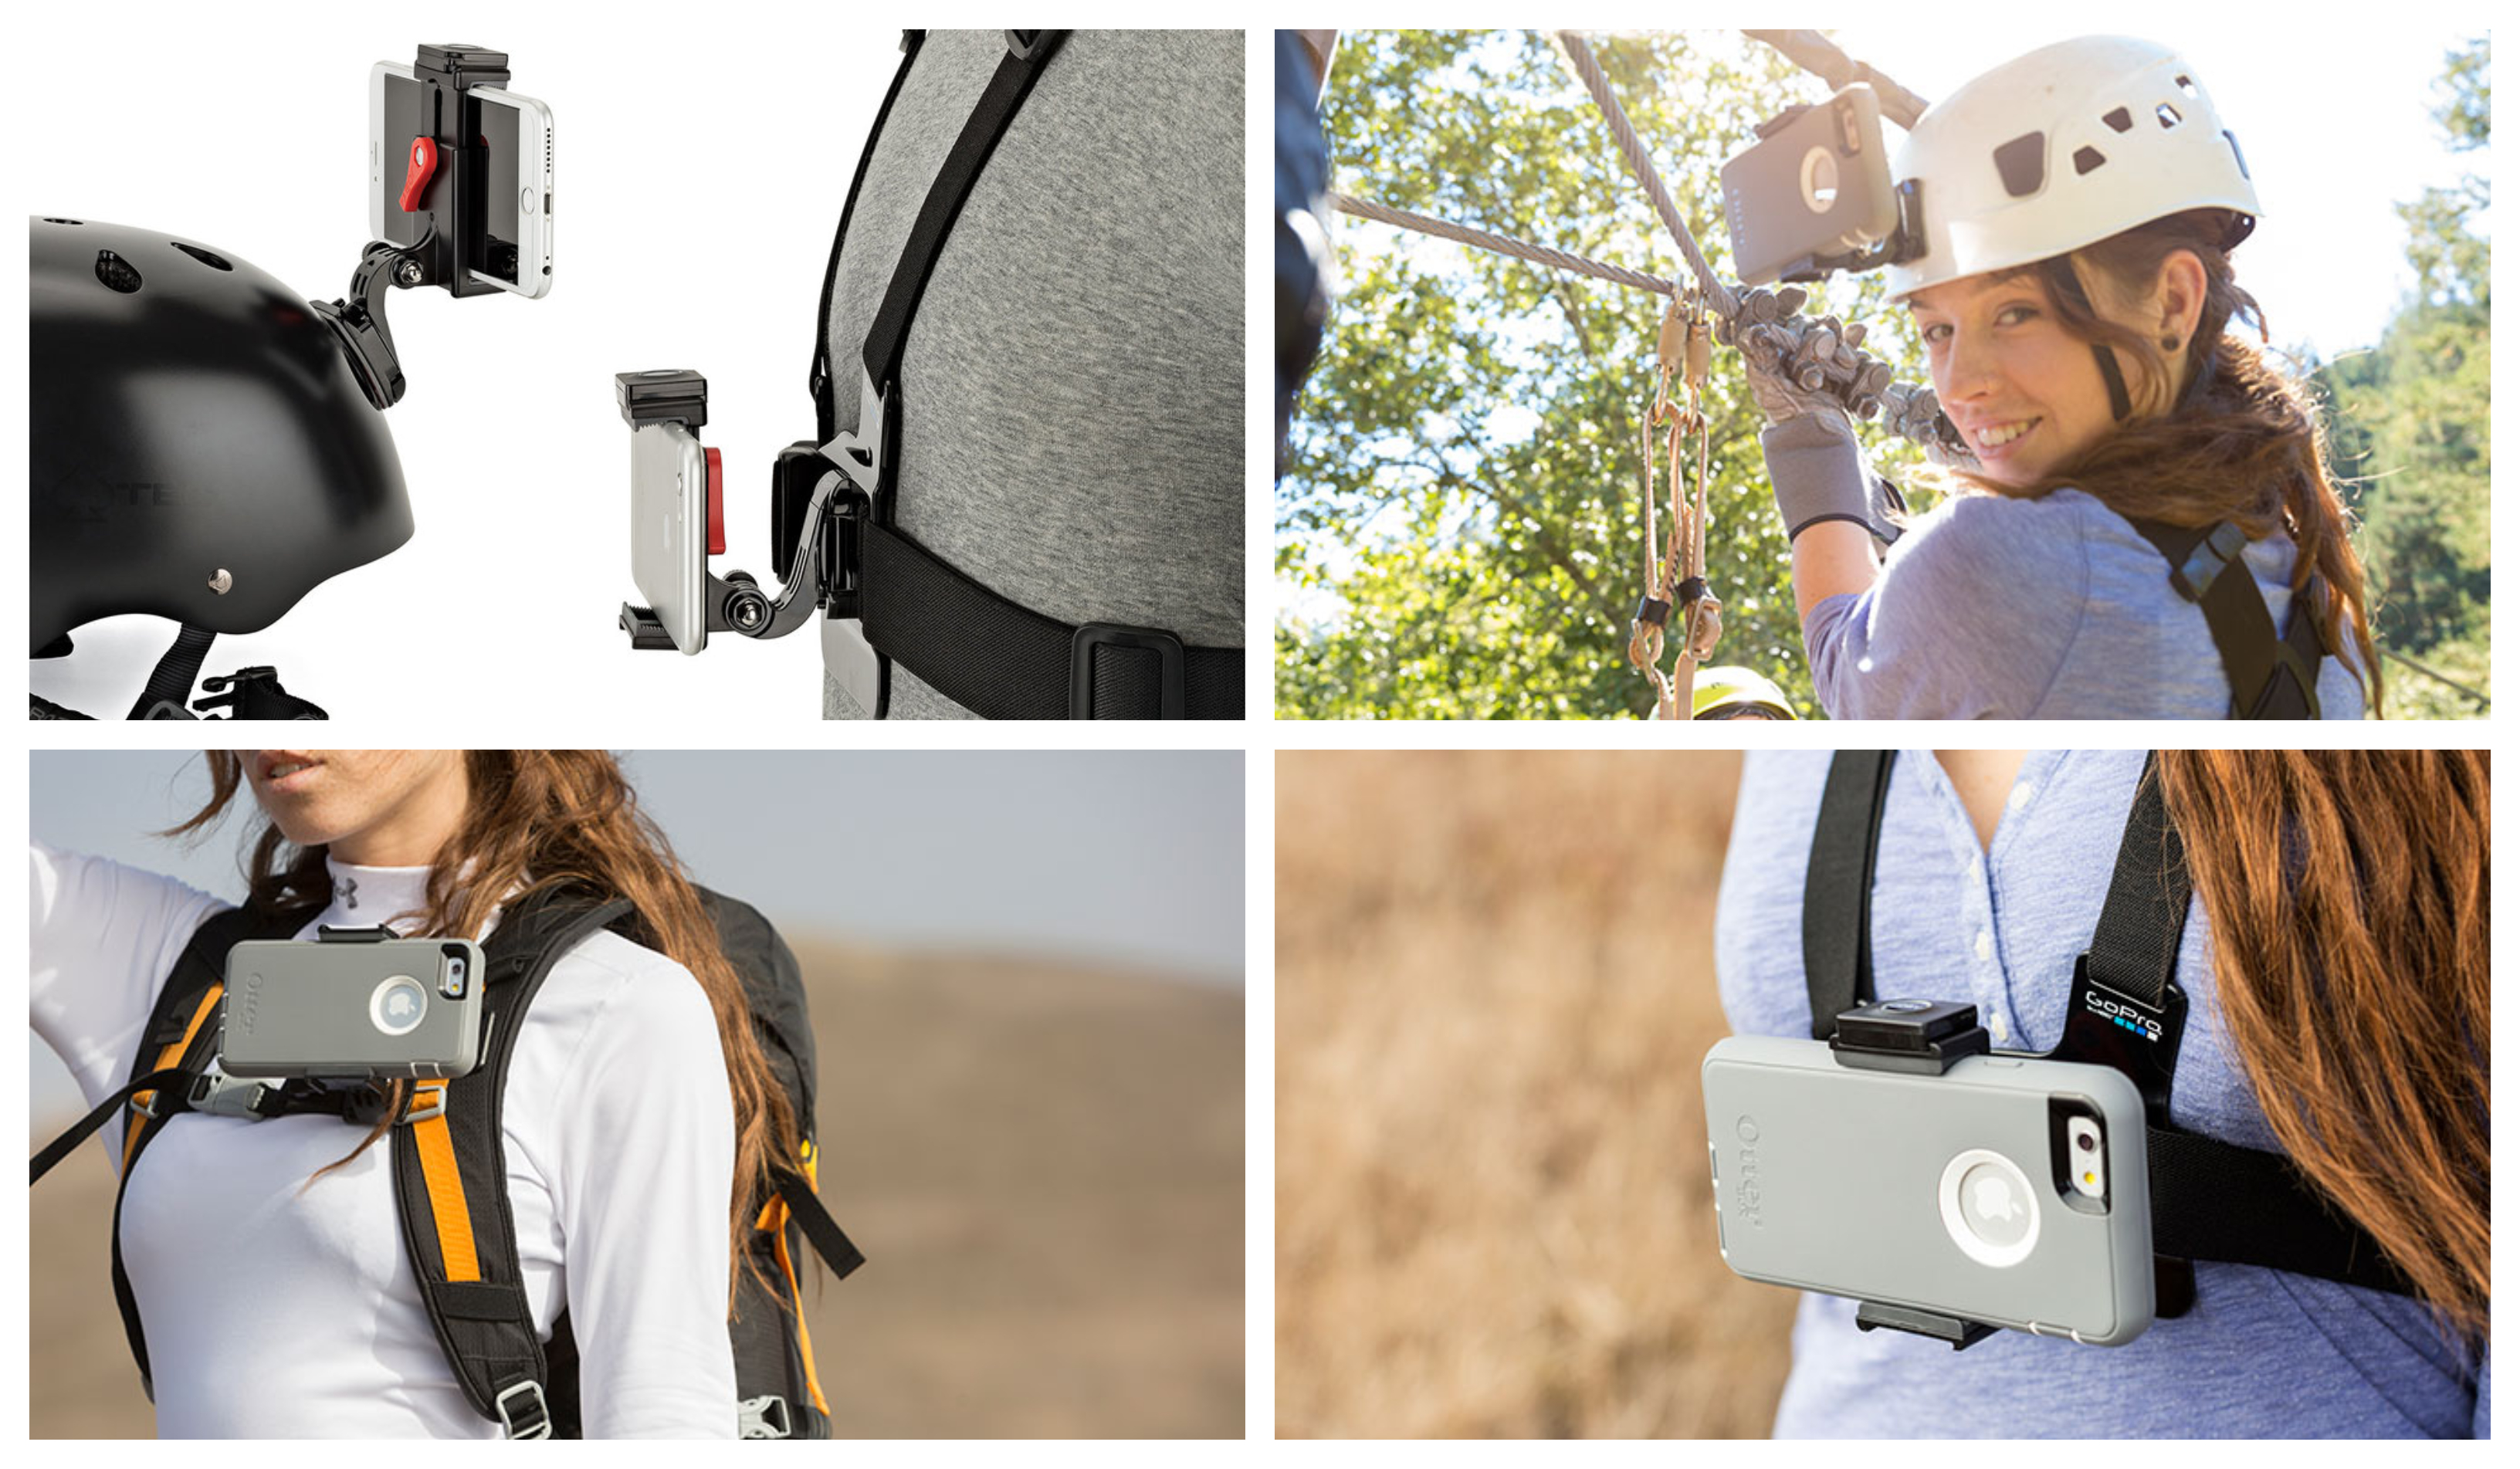 Součástí sady Joby GripTight Action Kit je kolíkový (pinový) držák pro akční kamery, který můžete připojit na hrudní pásy, na helmu či na ramenní popruh batohu.